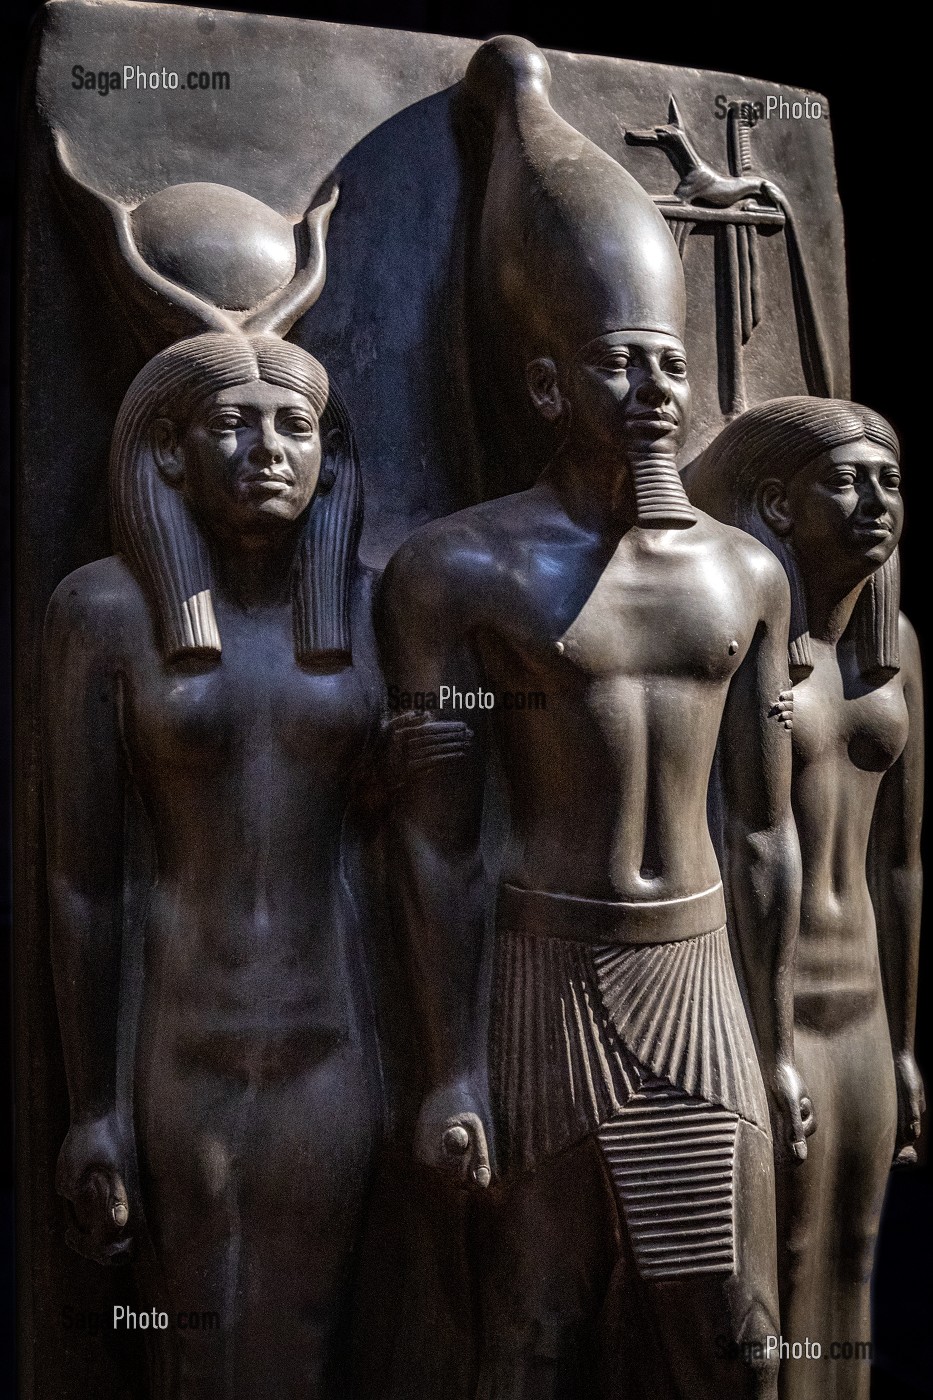 STATUAIRE DE L'ANCIEN EMPIRE, LA TRIADE DU PHARAON MYKERINOS ENTOURE DE LA DEESSE HATHOR ET LE NOME DE CYNOPOLIS, STATUE EN SCHISTE, MUSEE EGYPTIEN DU CAIRE CONSACRE A L'ANTIQUITE EGYPTIENNE, LE CAIRE, EGYPTE, AFRIQUE 